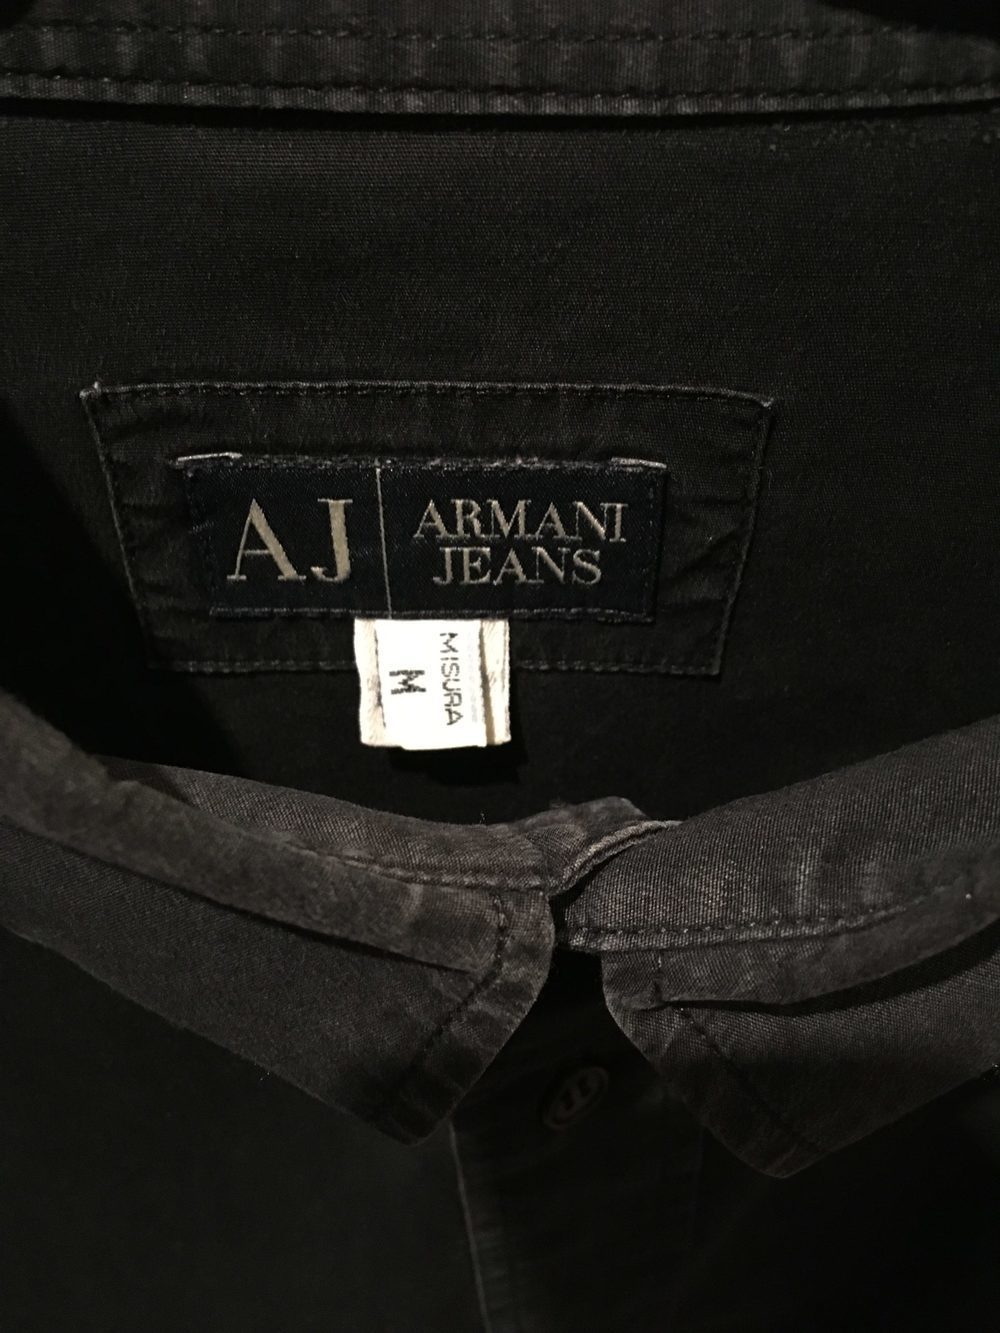 Camisa M (Armani Jeans) 4